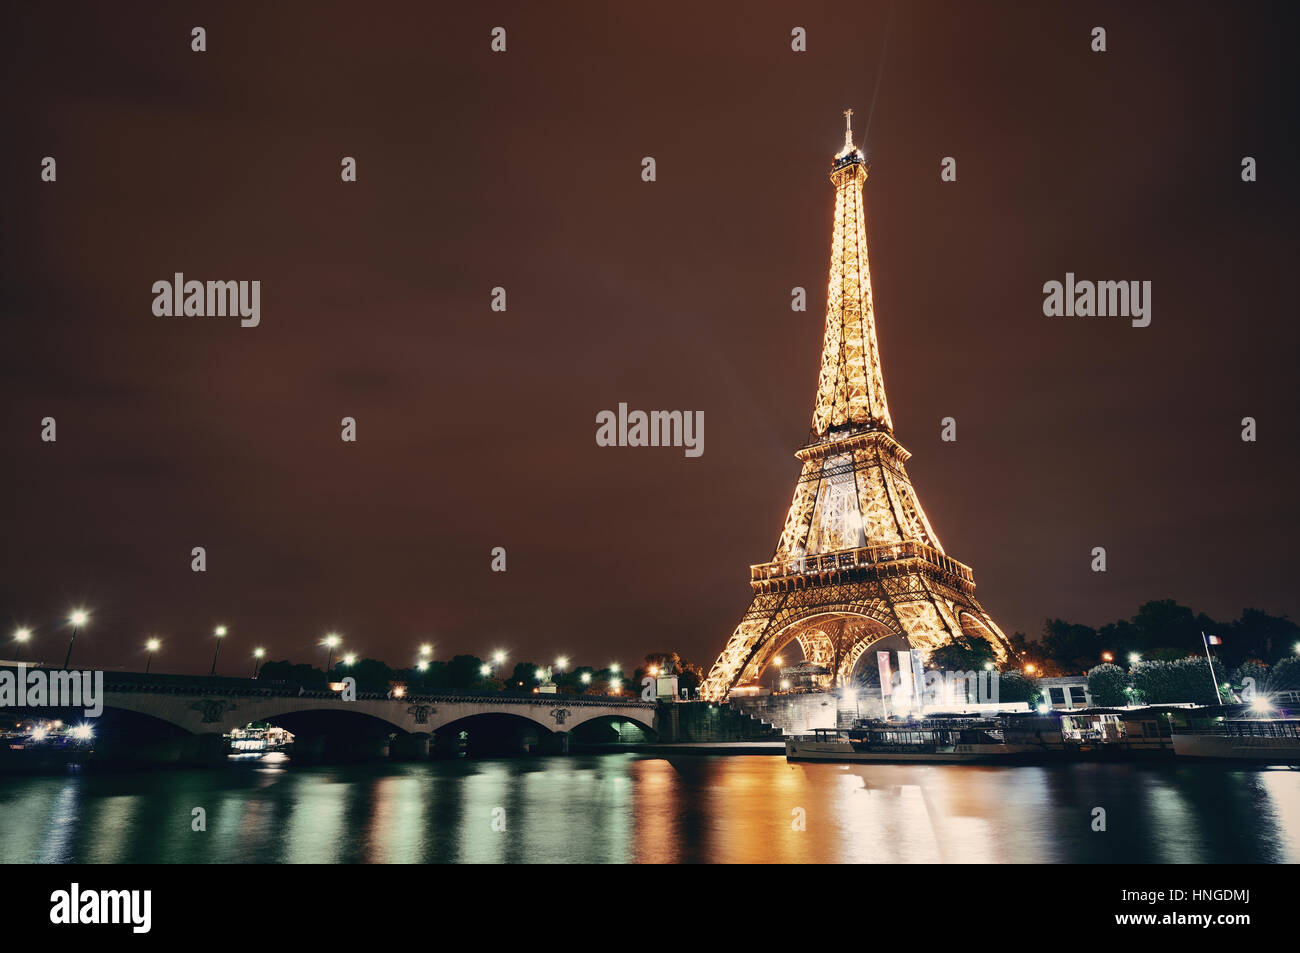 París, Francia - 13 de mayo: La Torre Eiffel vista nocturna el 13 de mayo de 2015 en París. Es el monumento más visitado de pagado en el mundo con 250 millones de visitantes anuales. Foto de stock